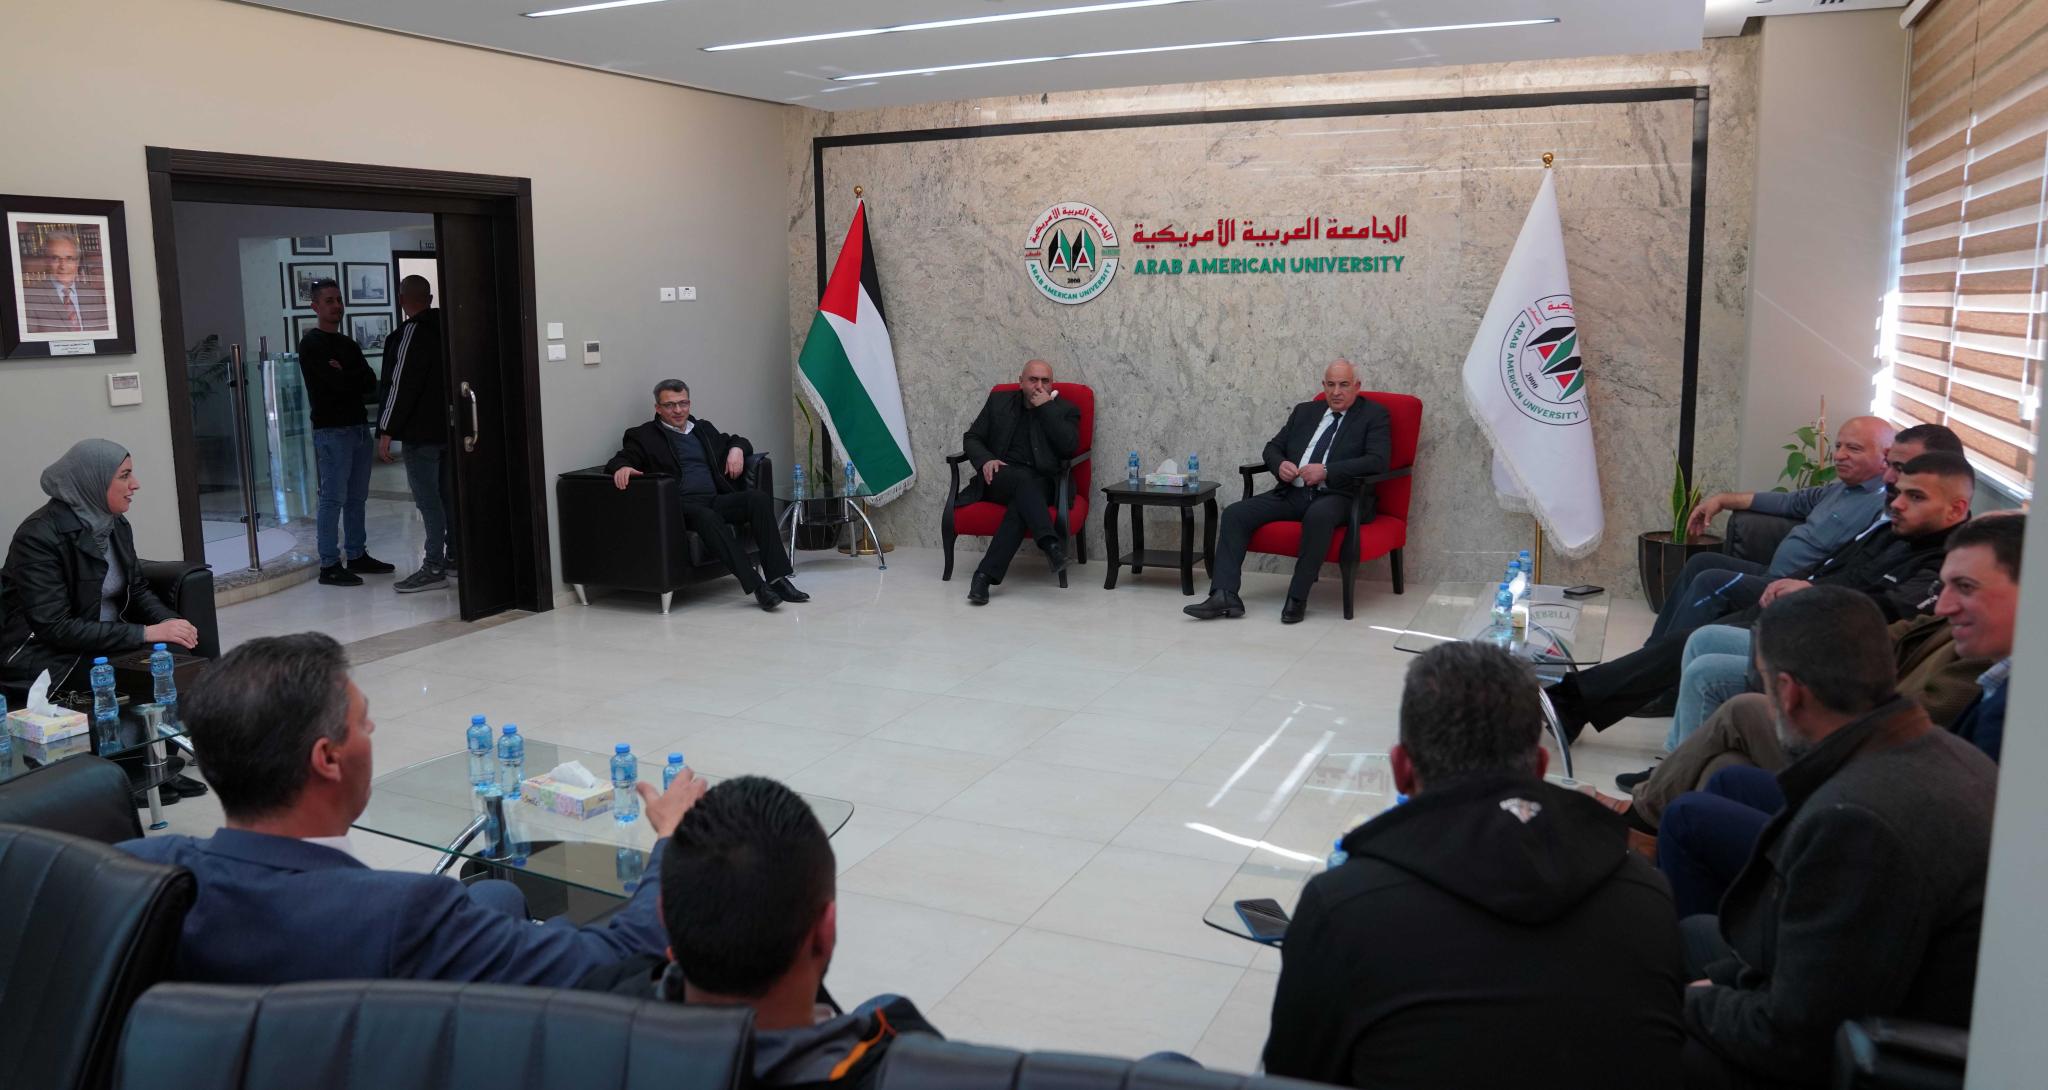 وزير الداخلية اللواء زياد هب الريح في زيارة للجامعة العربية الأمريكية